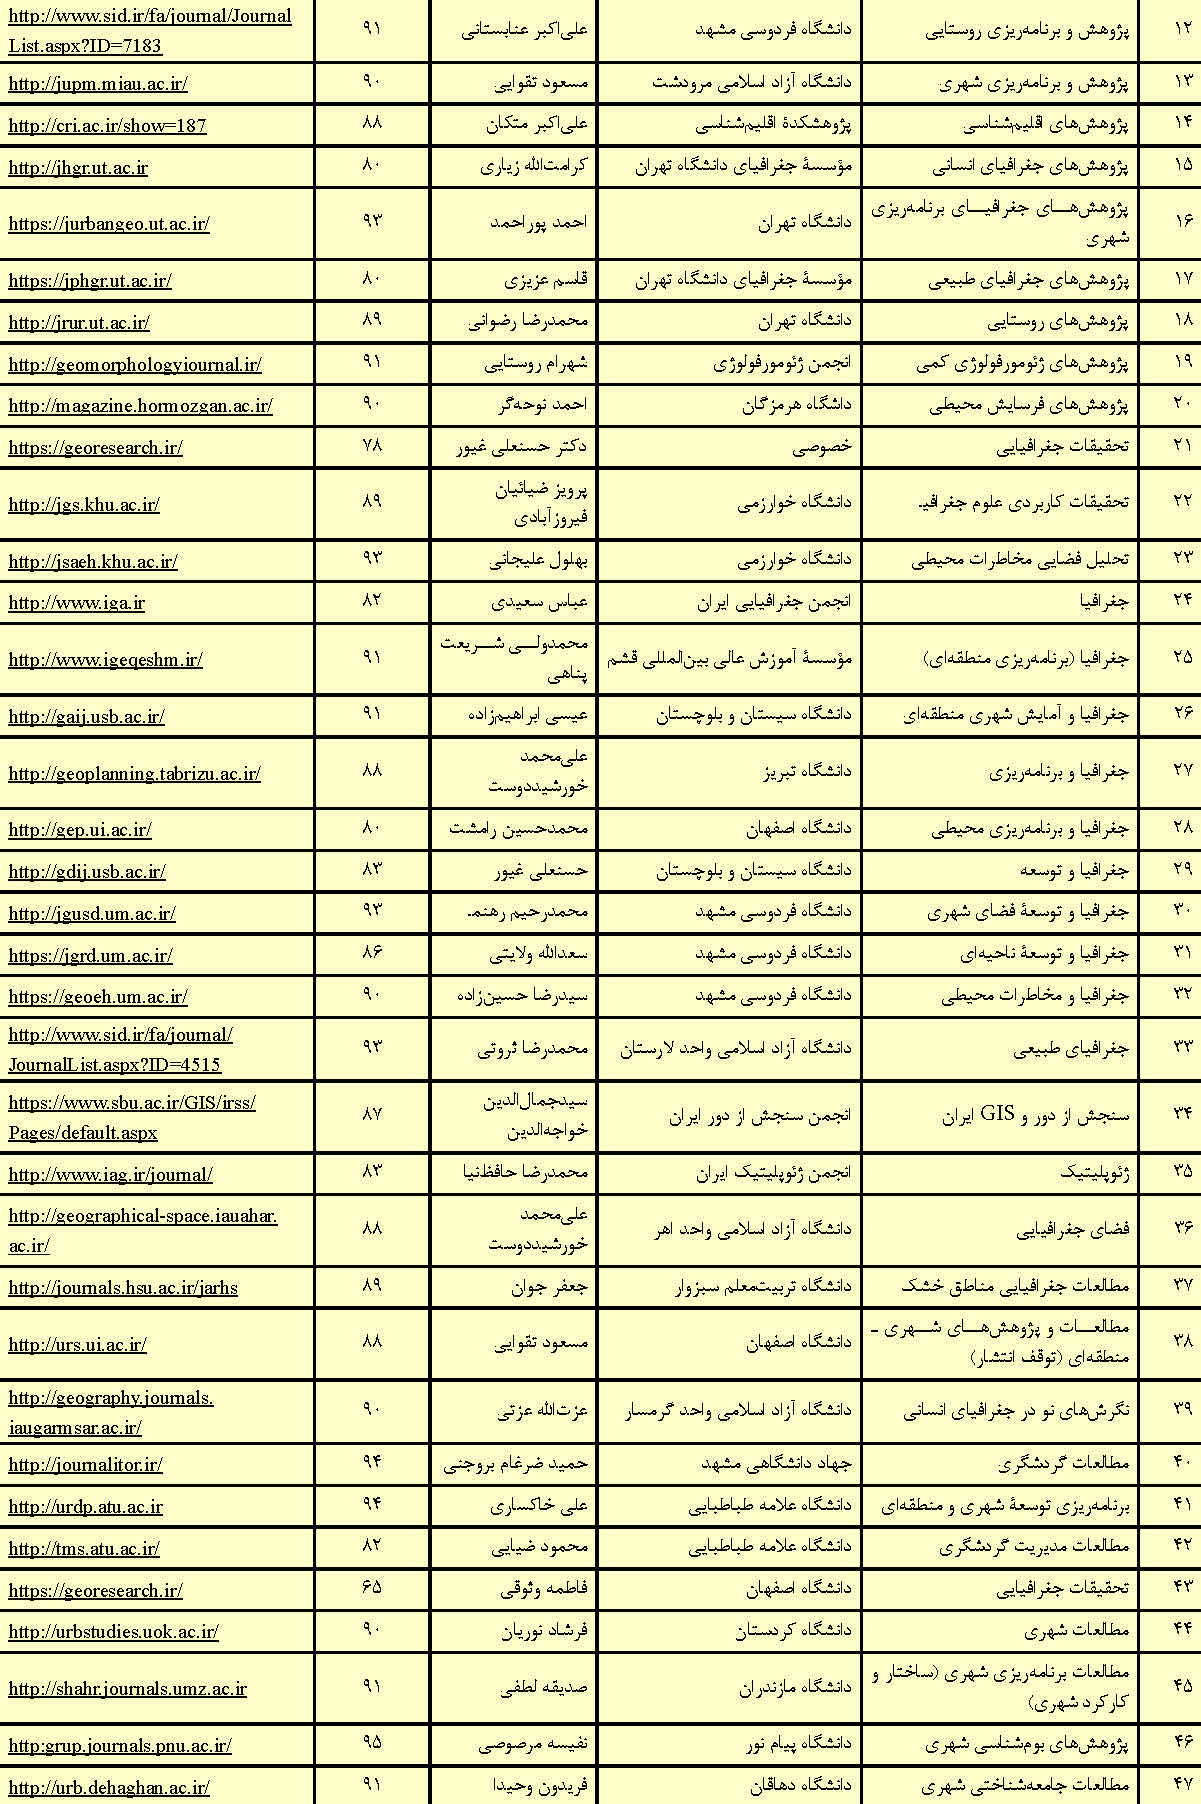 مجلات دیجیتالی فارسی با موضوع جغرافیا